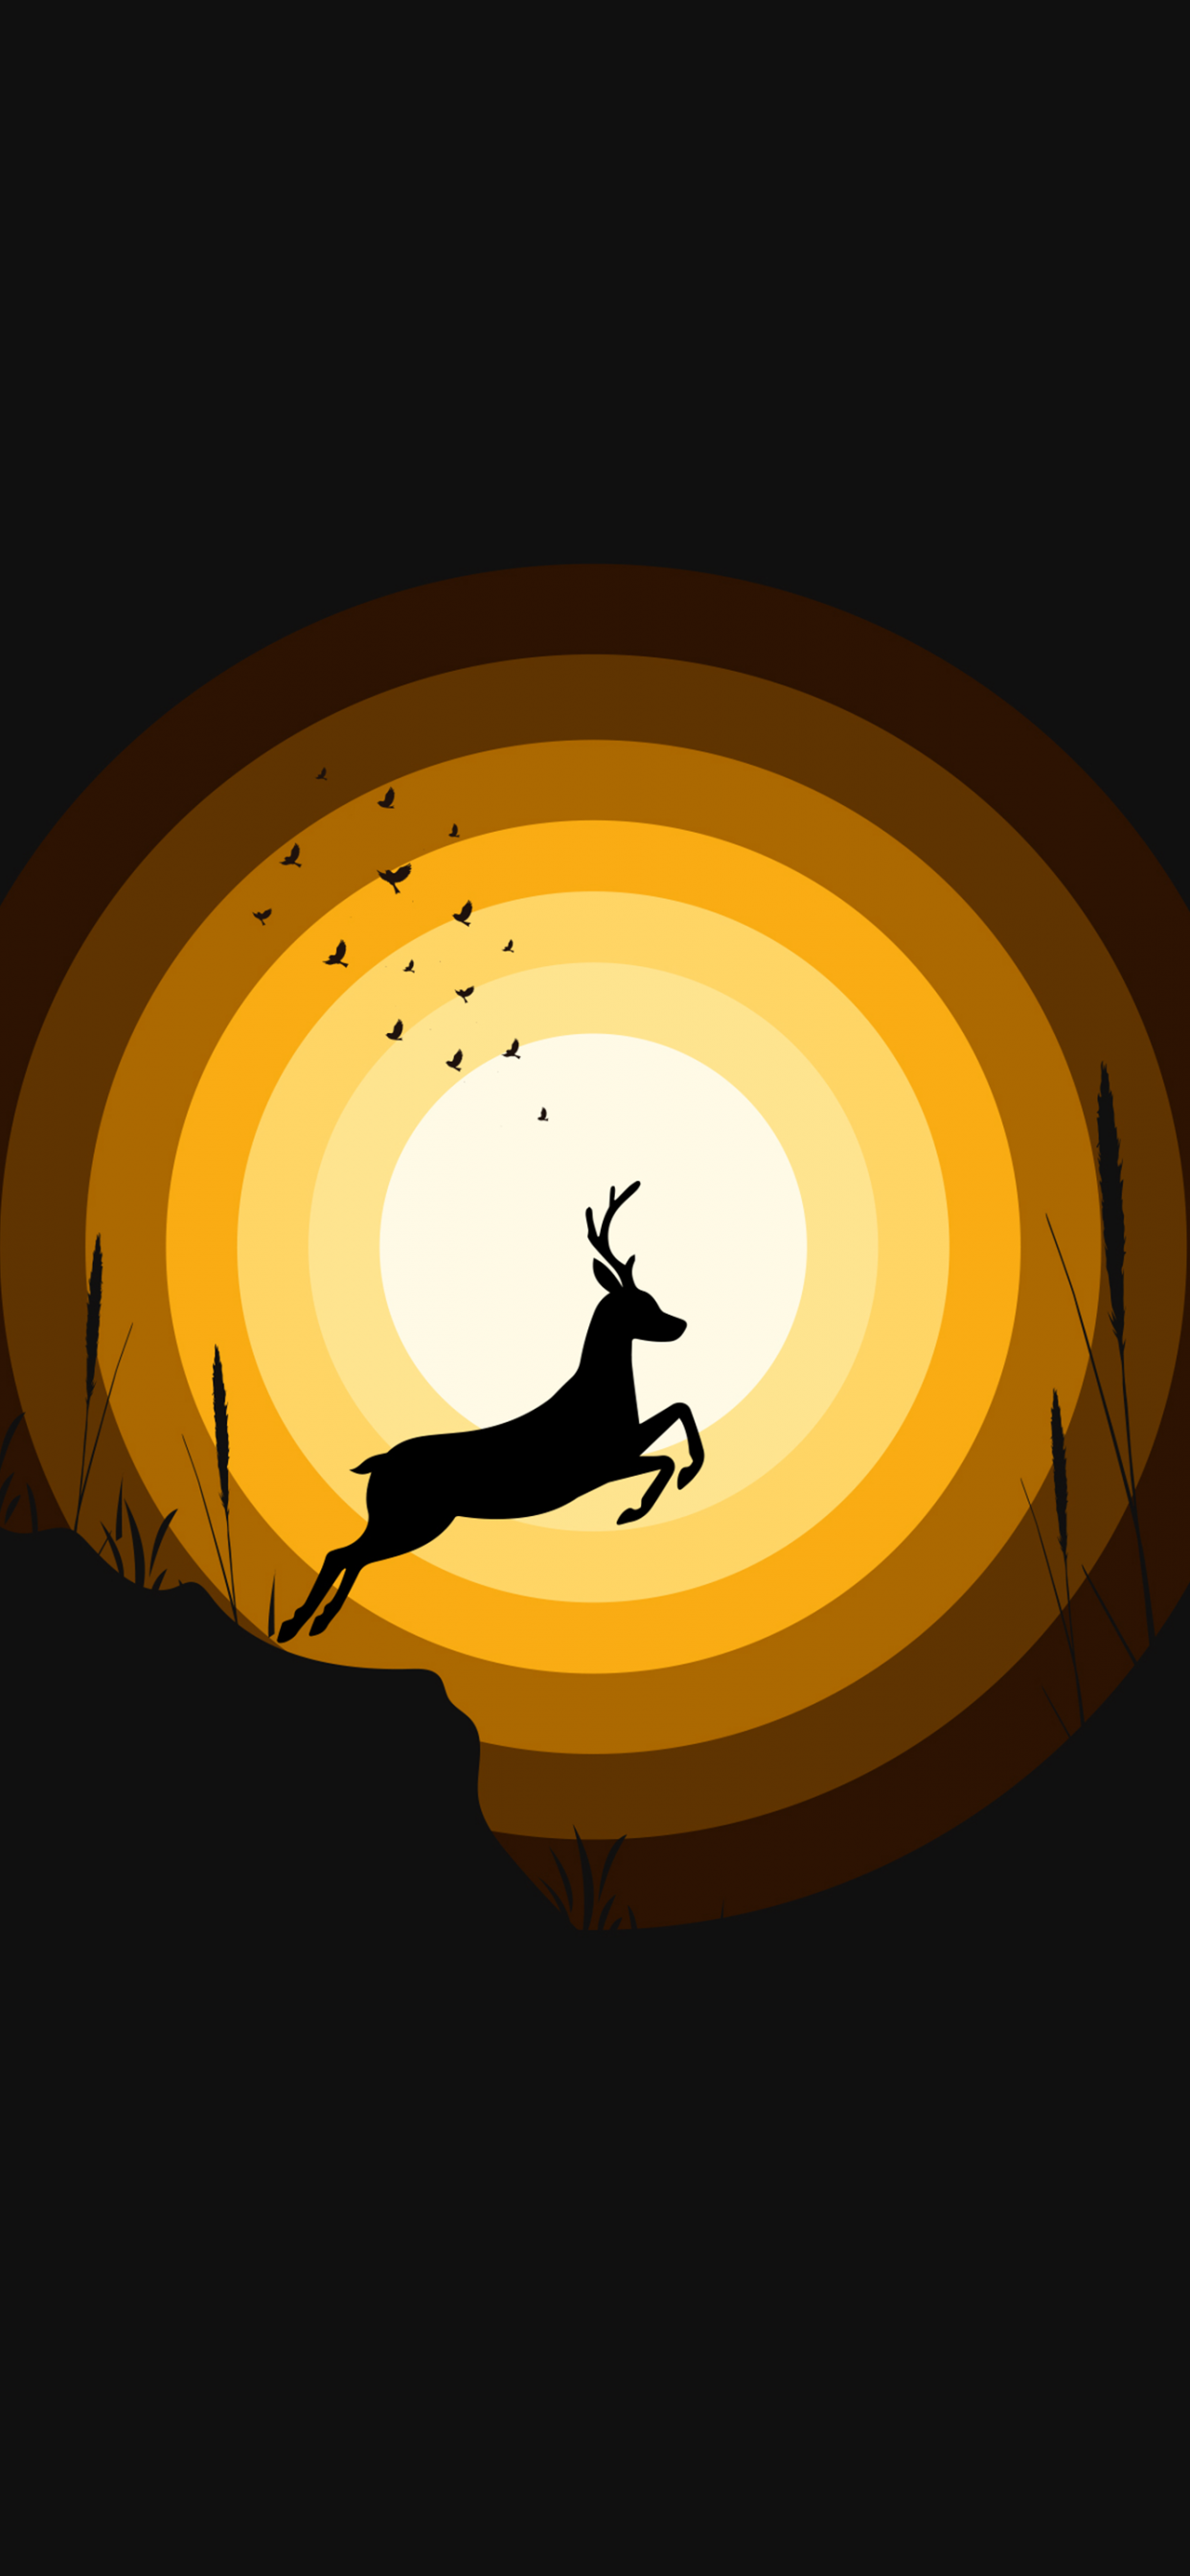 Fantasy Deer 4k Ultra HD Wallpaper